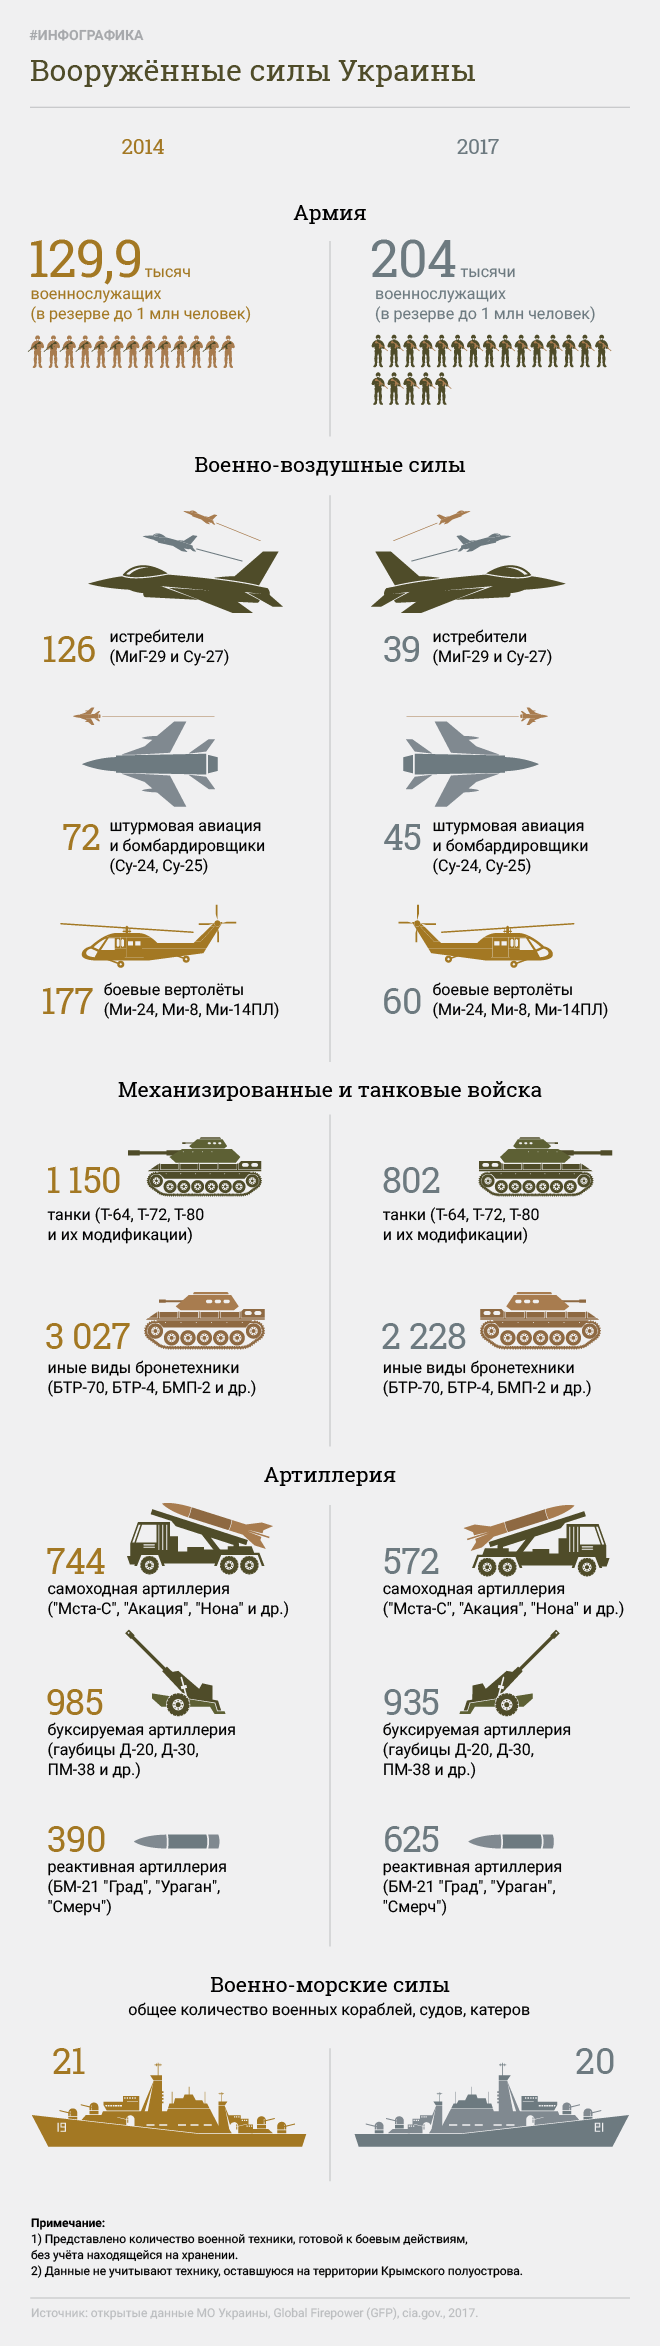 ウクライナの軍隊。 インフォグラフィック